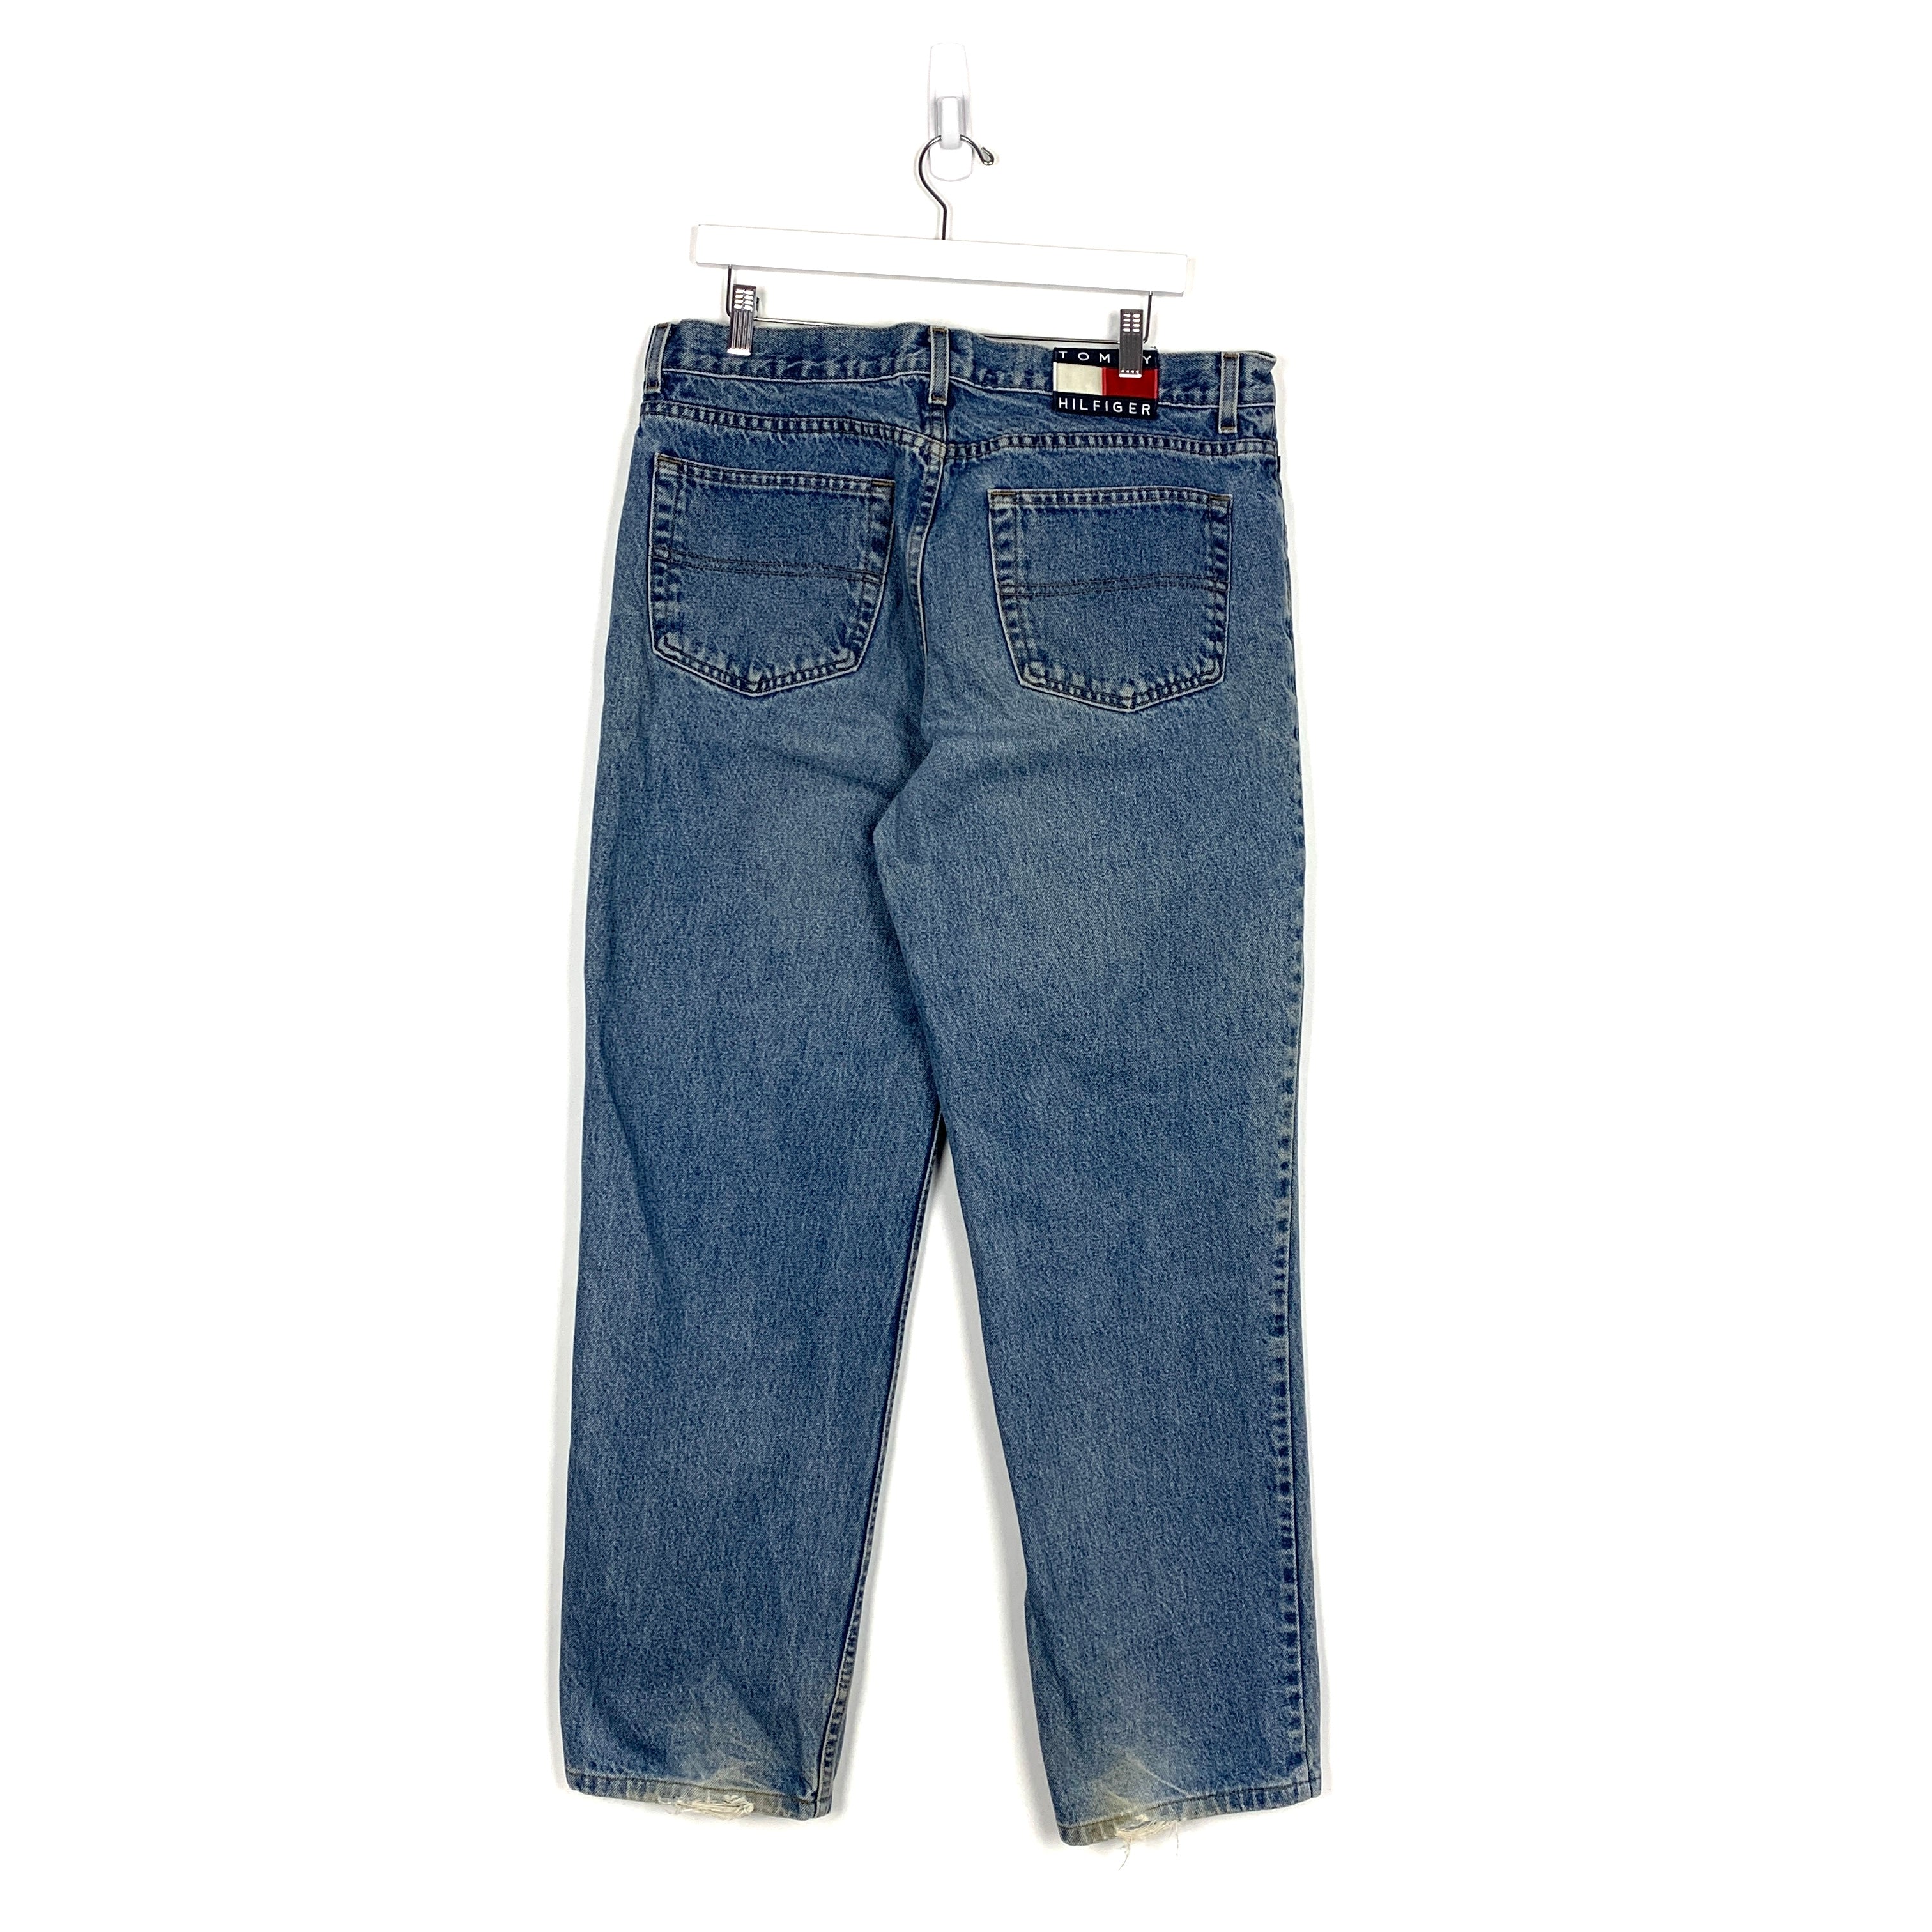 Vintage Tommy Hilfiger Jeans - Men's 36/34